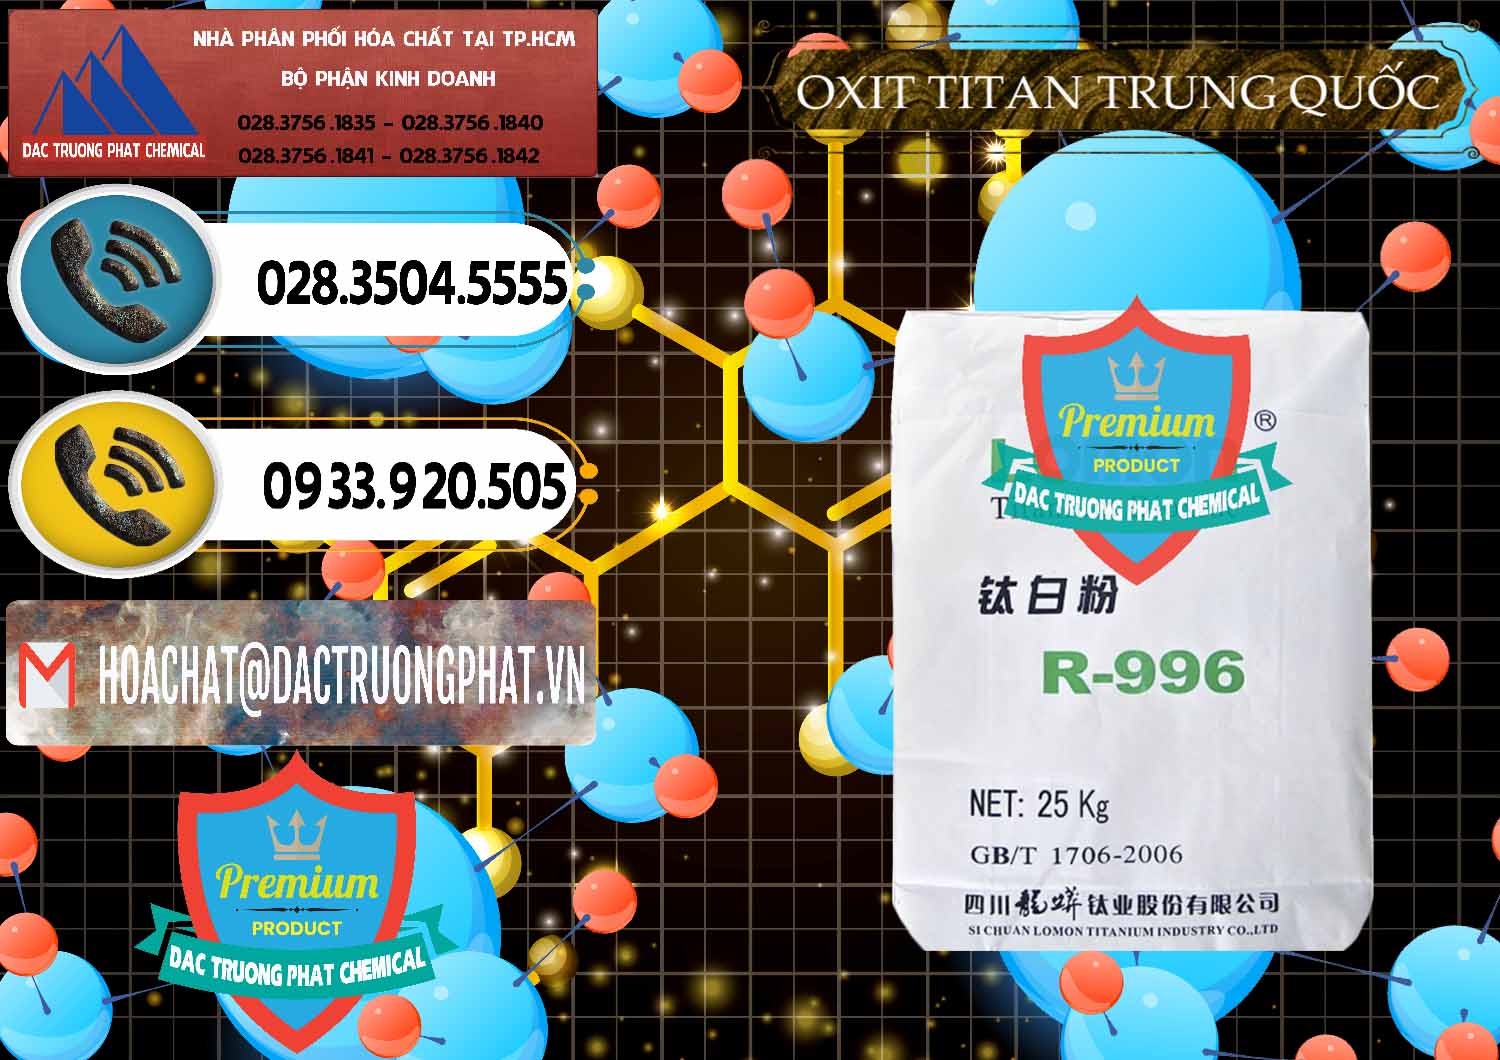 Bán - phân phối Oxit Titan KA100 – Tio2 Trung Quốc China - 0398 - Nhà cung cấp và phân phối hóa chất tại TP.HCM - hoachatdetnhuom.vn